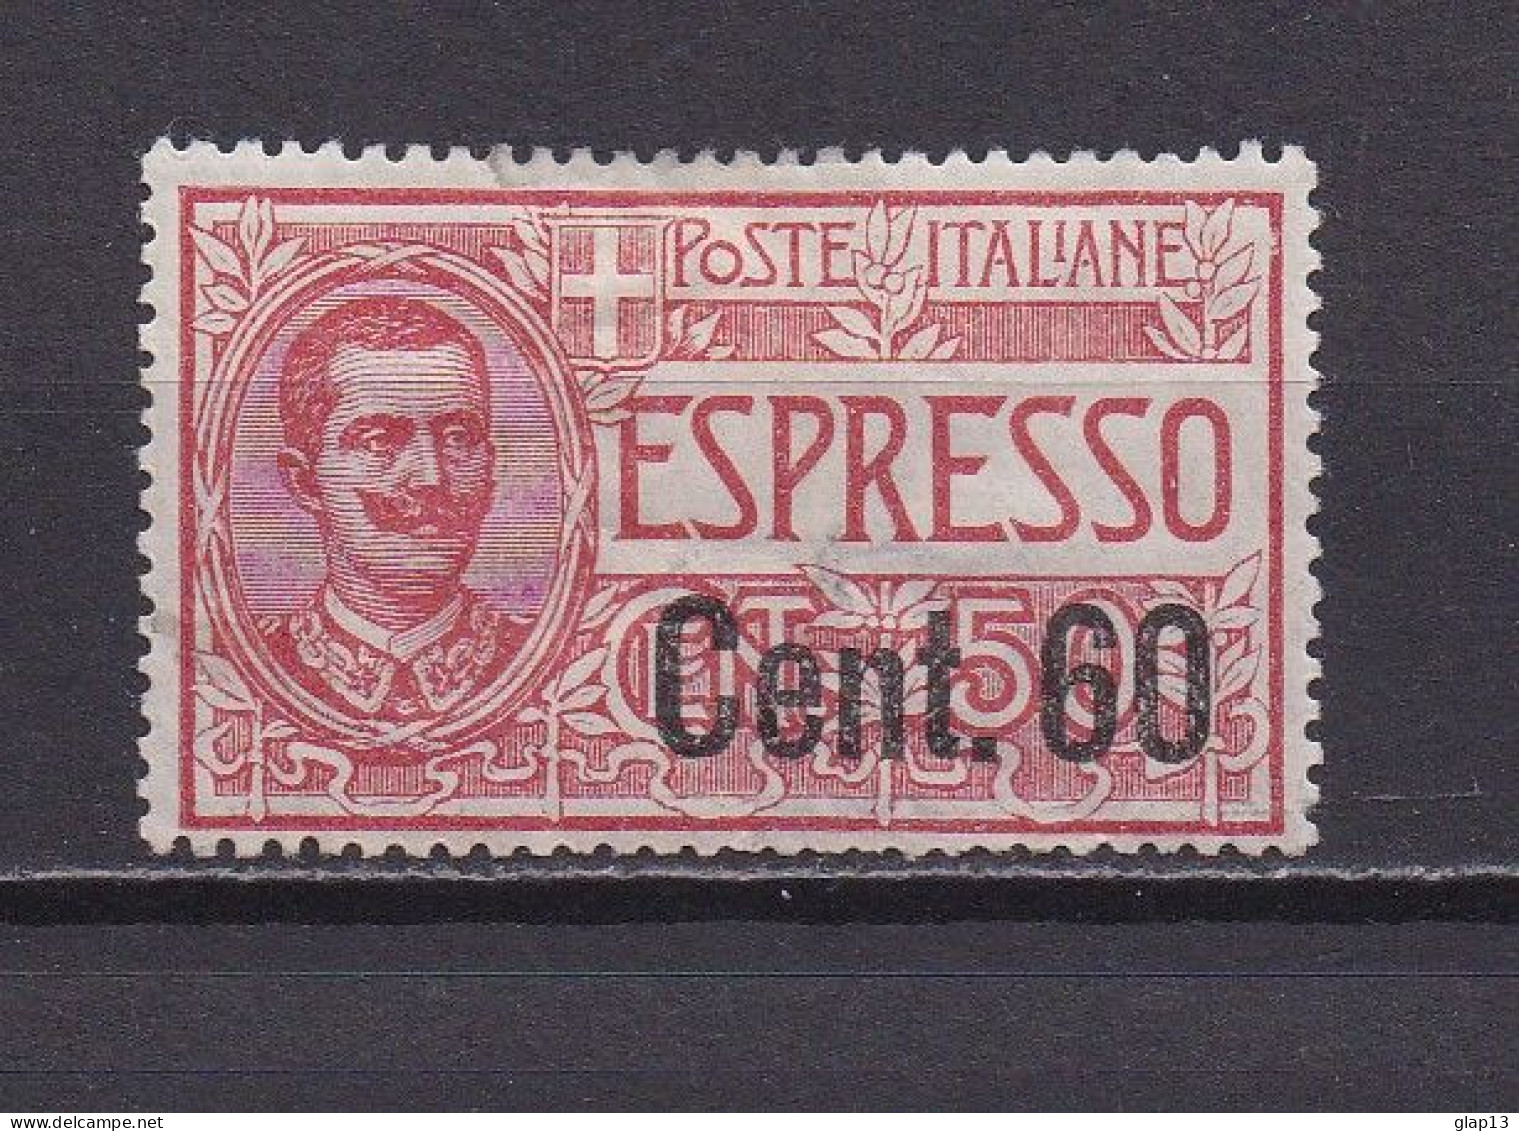 ITALIE 1922 EXPRESS N°8 NEUF AVEC CHARNIERE - Express-post/pneumatisch